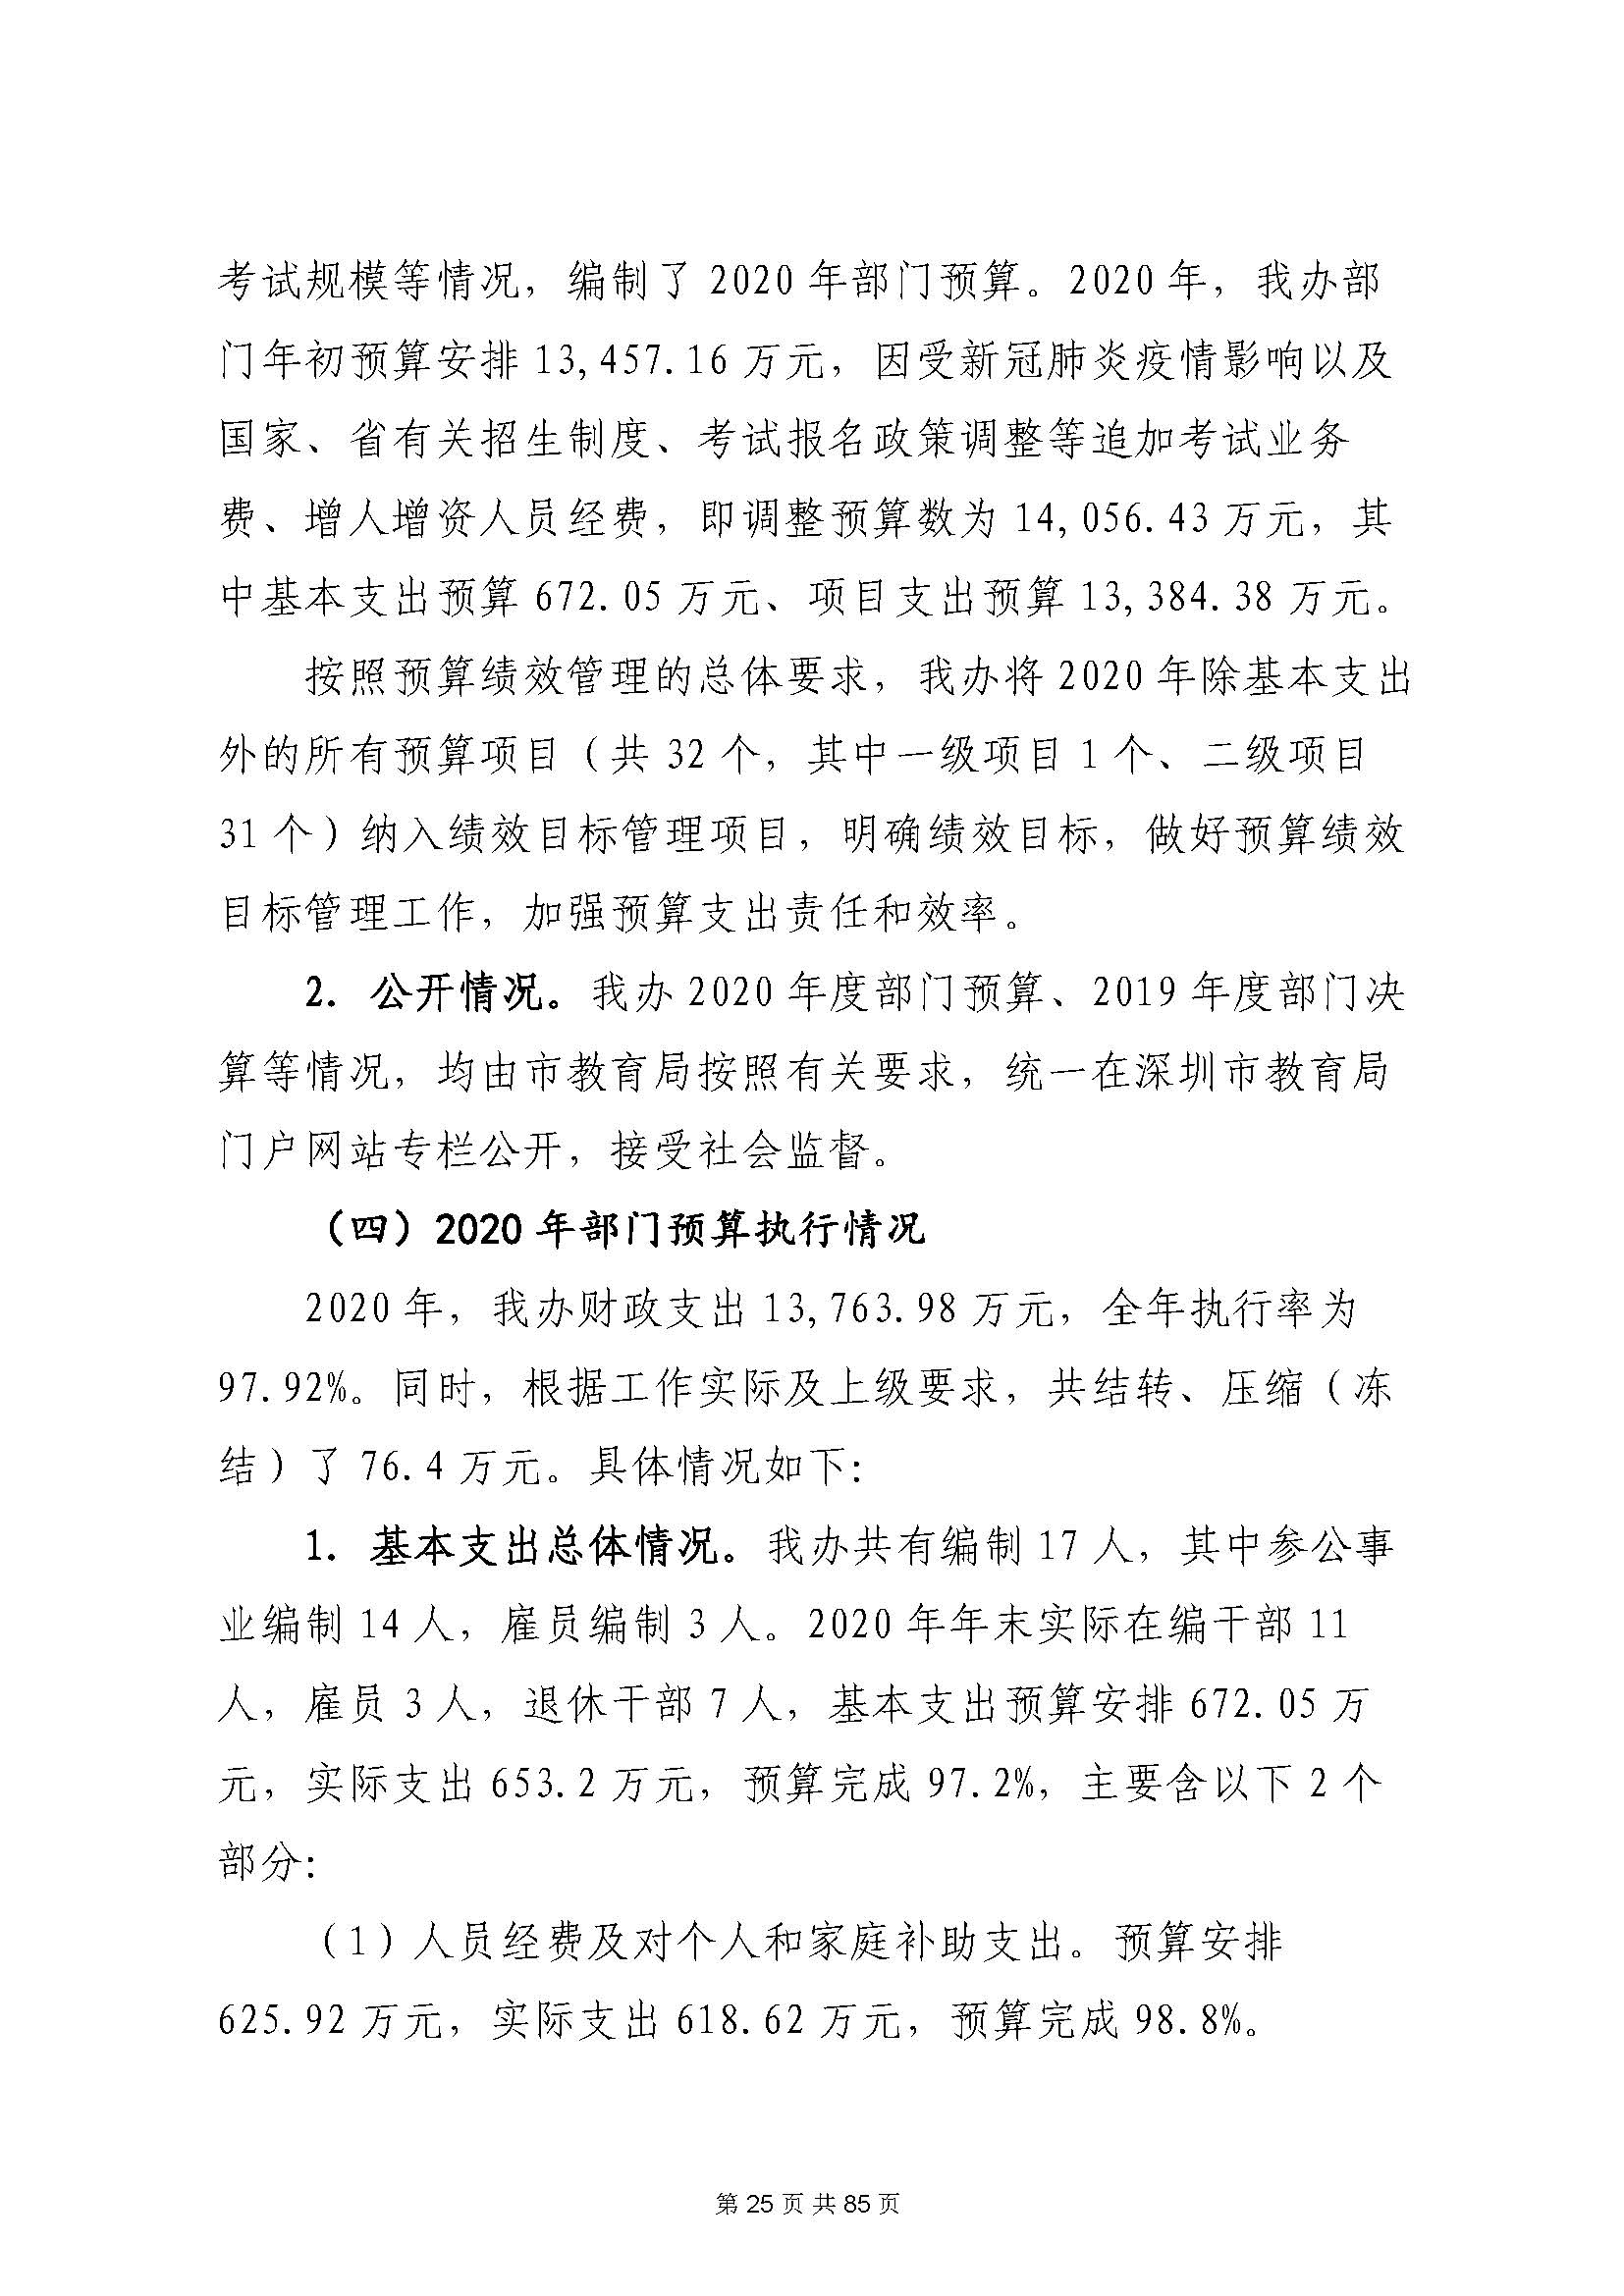 深圳市招生考试办公室2020年度部门决算_页面_26.jpg